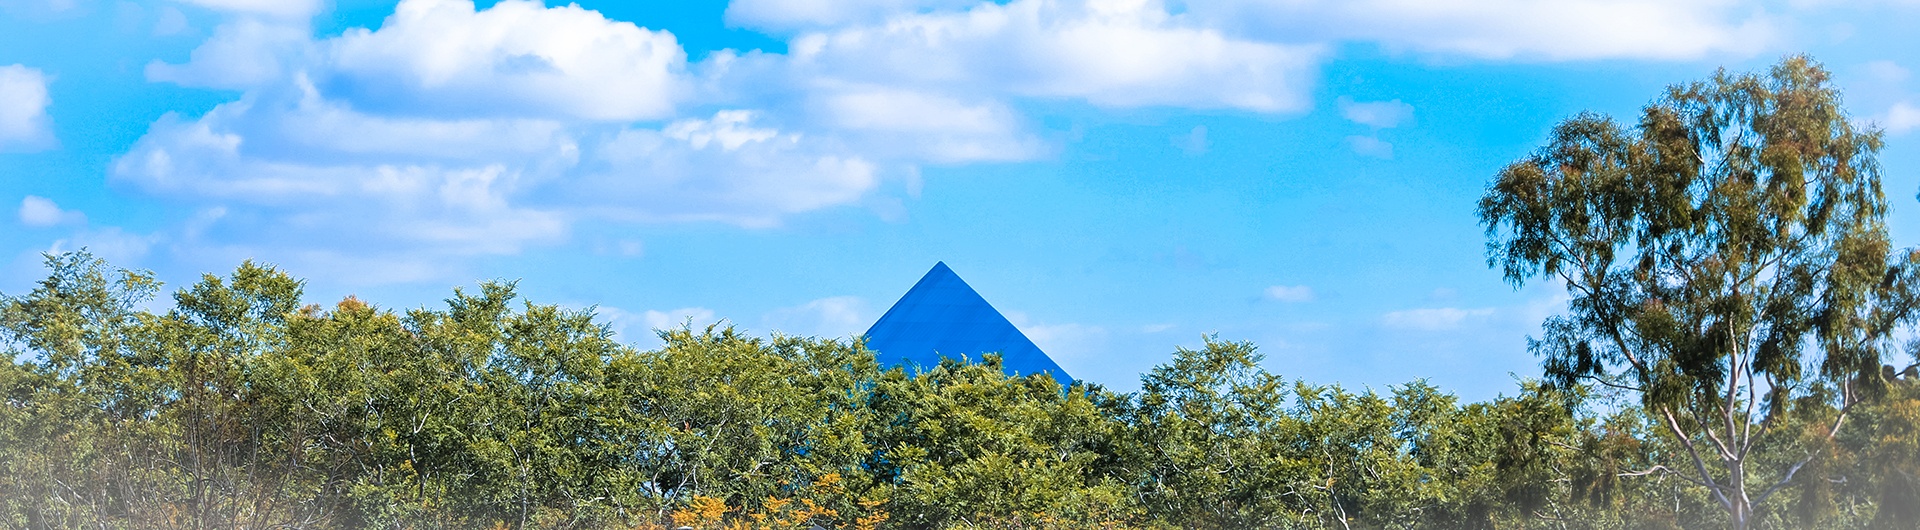 school pyramid